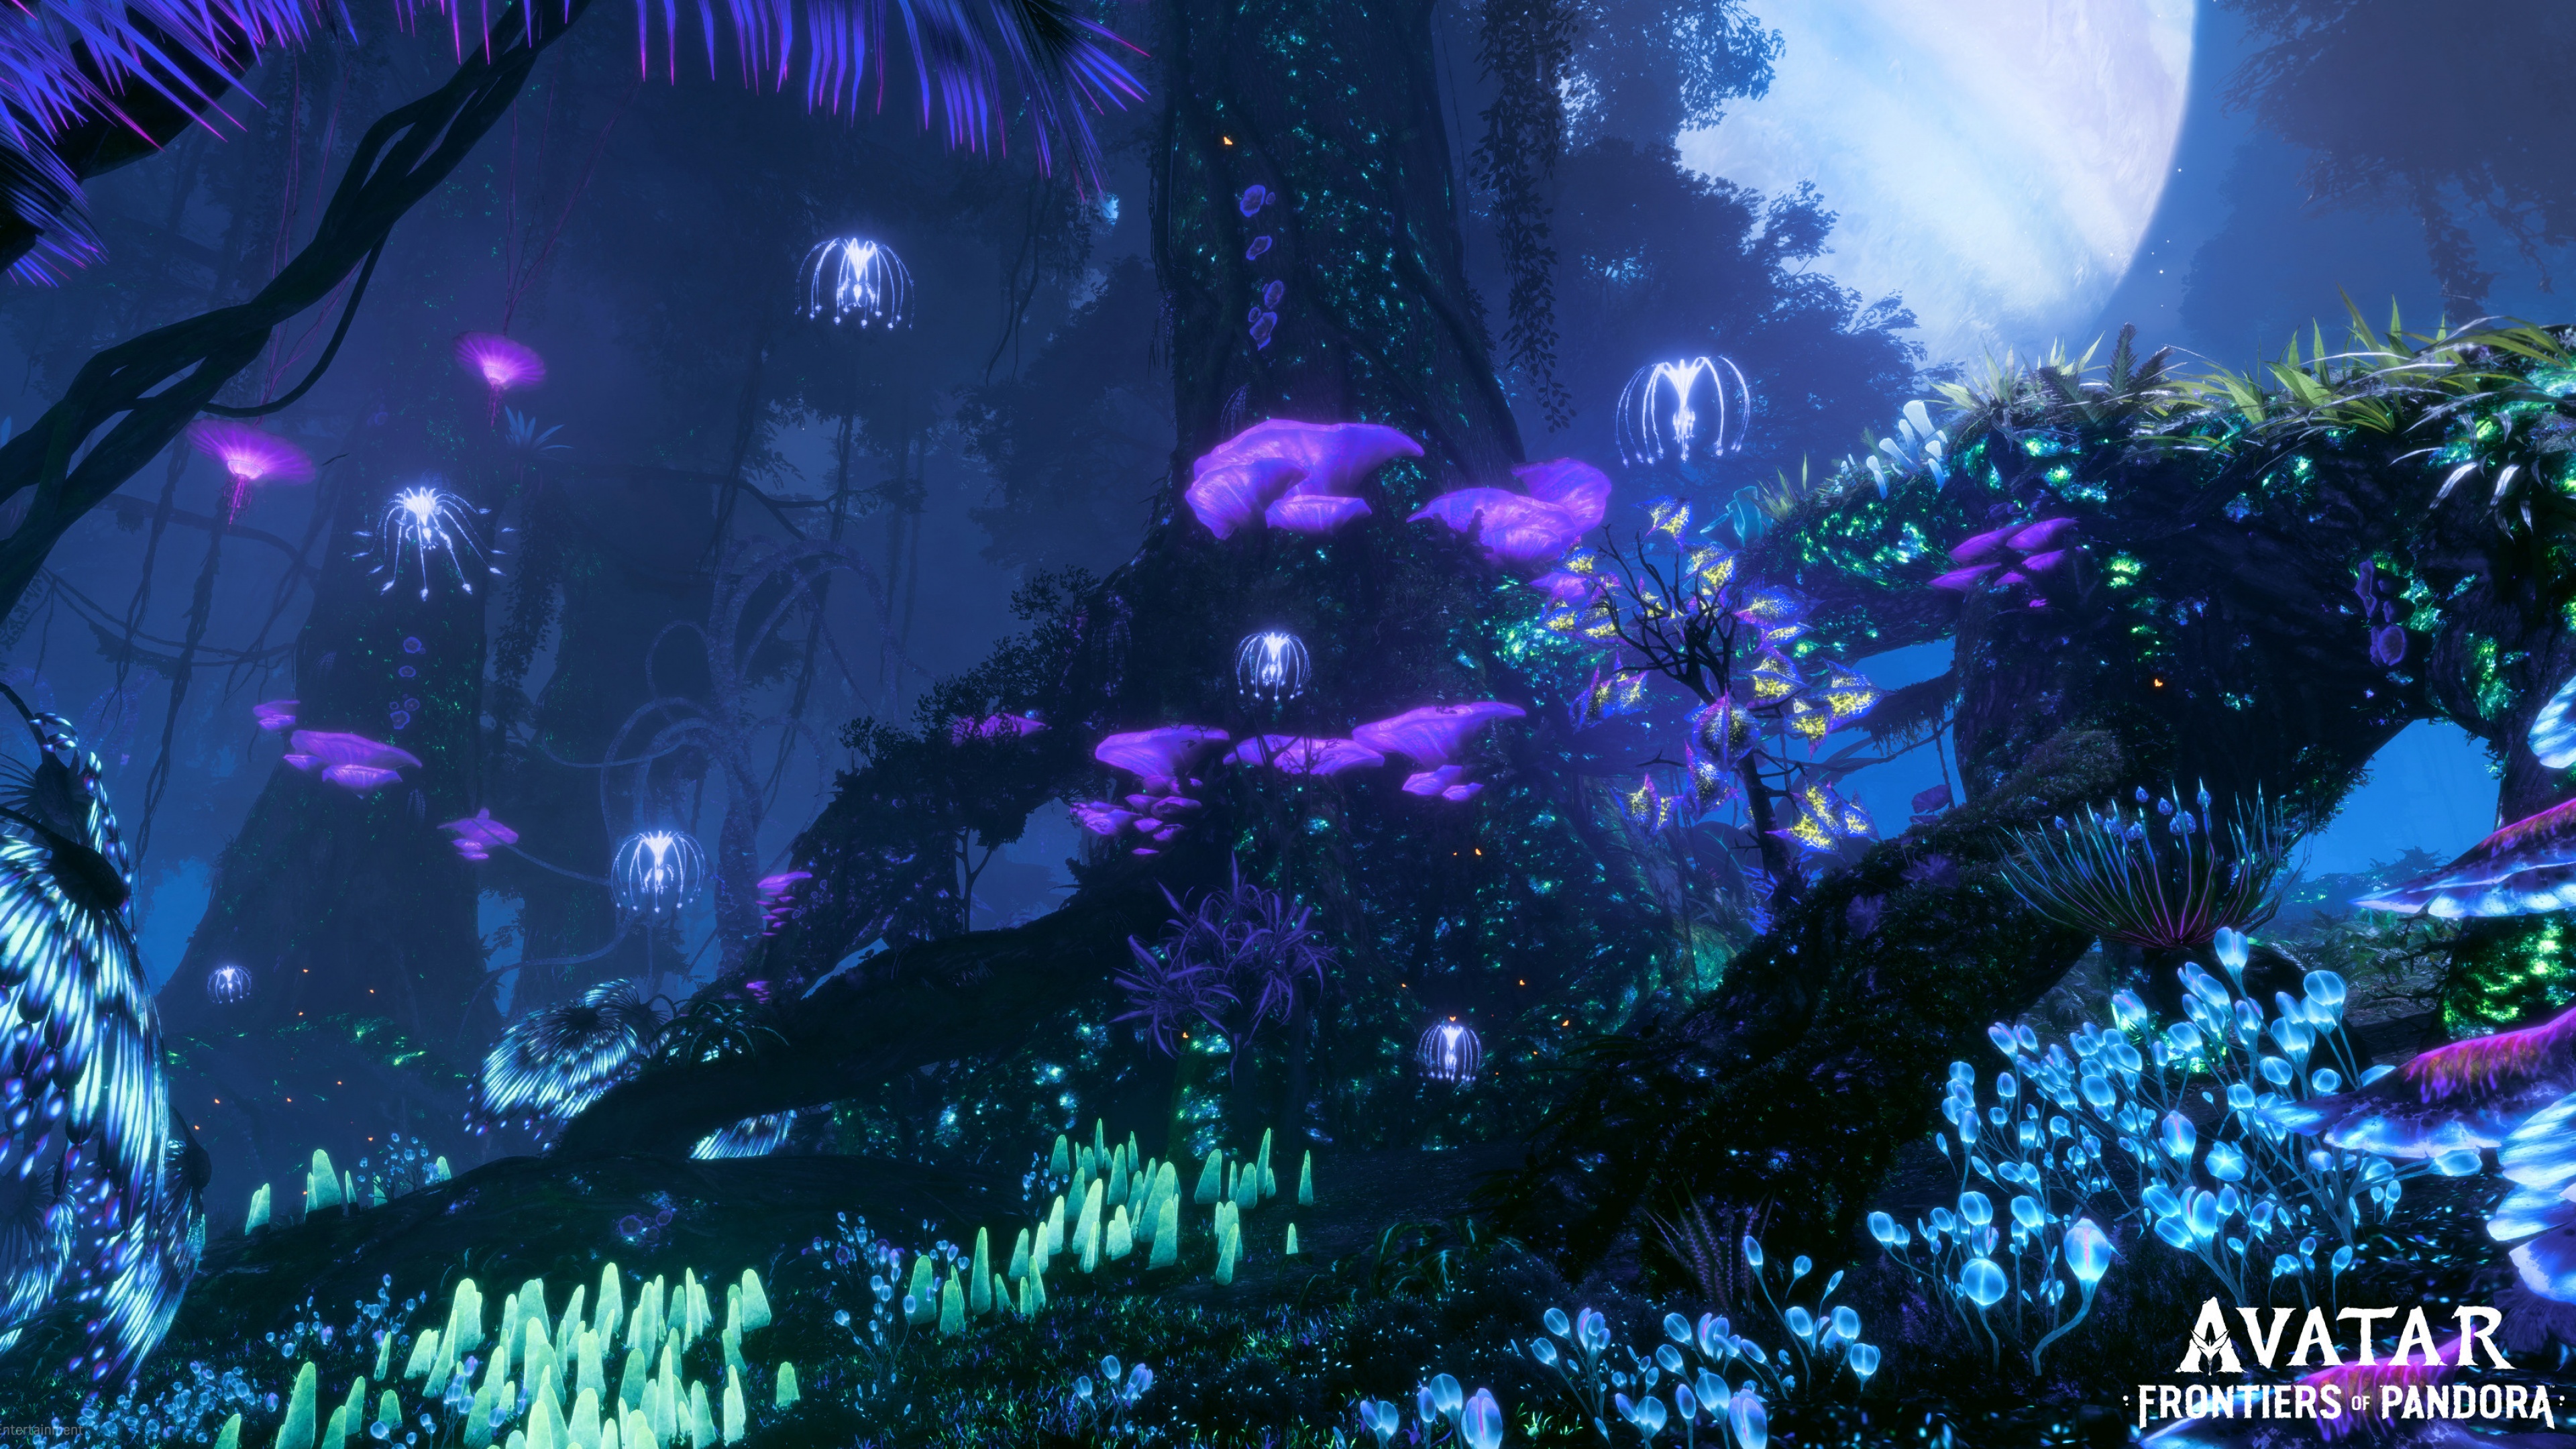 Avatar: Frontiers of Pandora Wallpaper 4K, 2022 Games, Amazon Luna, Games